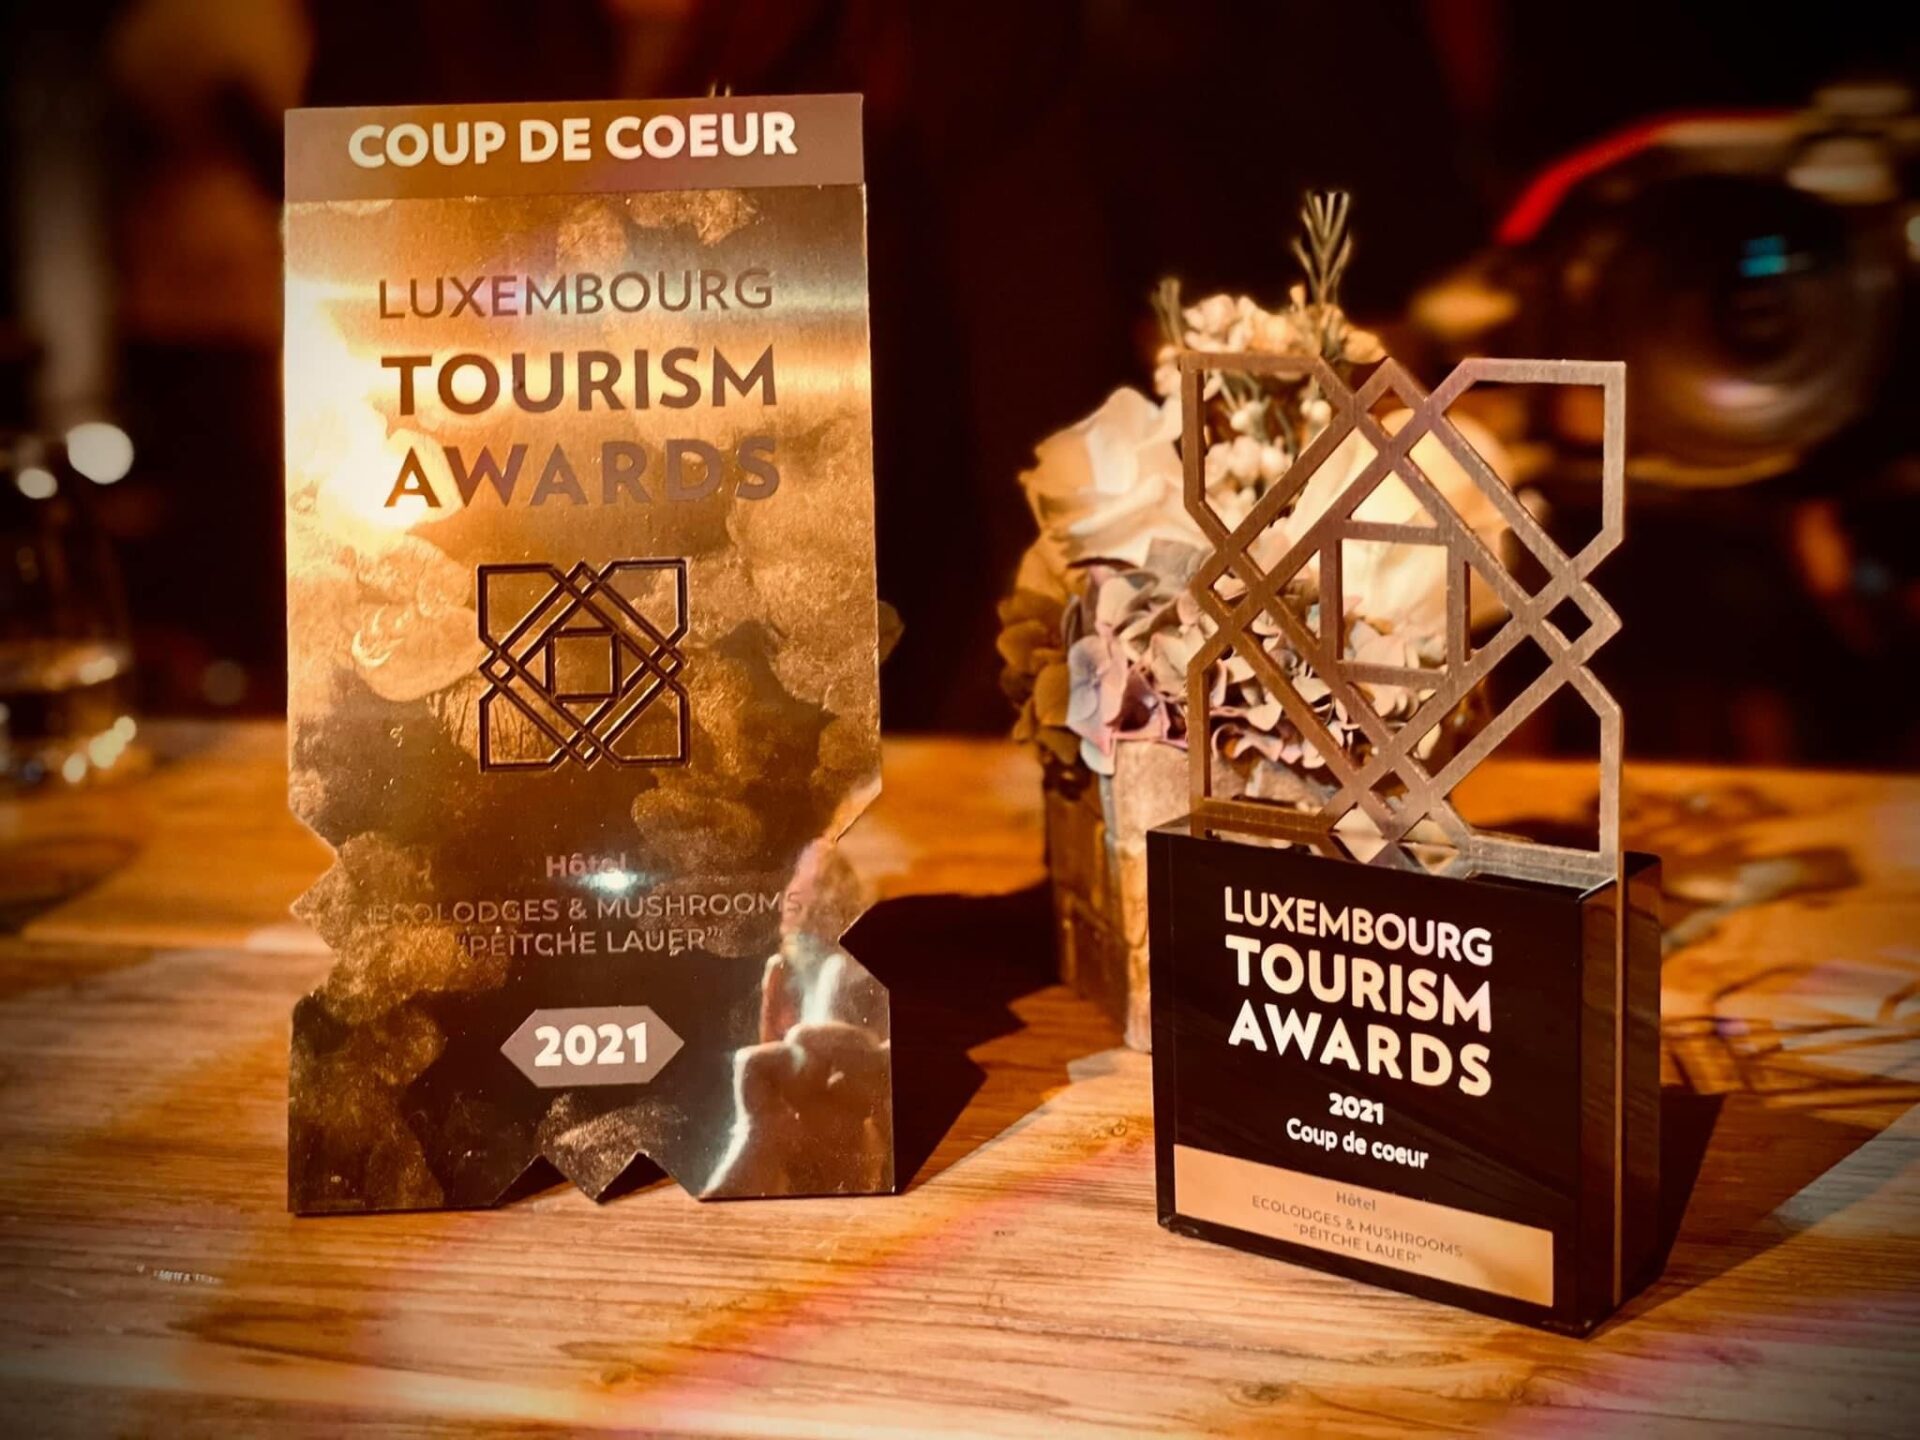 Luxembourg Tourism Awards 2021 - Coup de coeur pour Ecolodges & Mushrooms "Péitche Lauer"